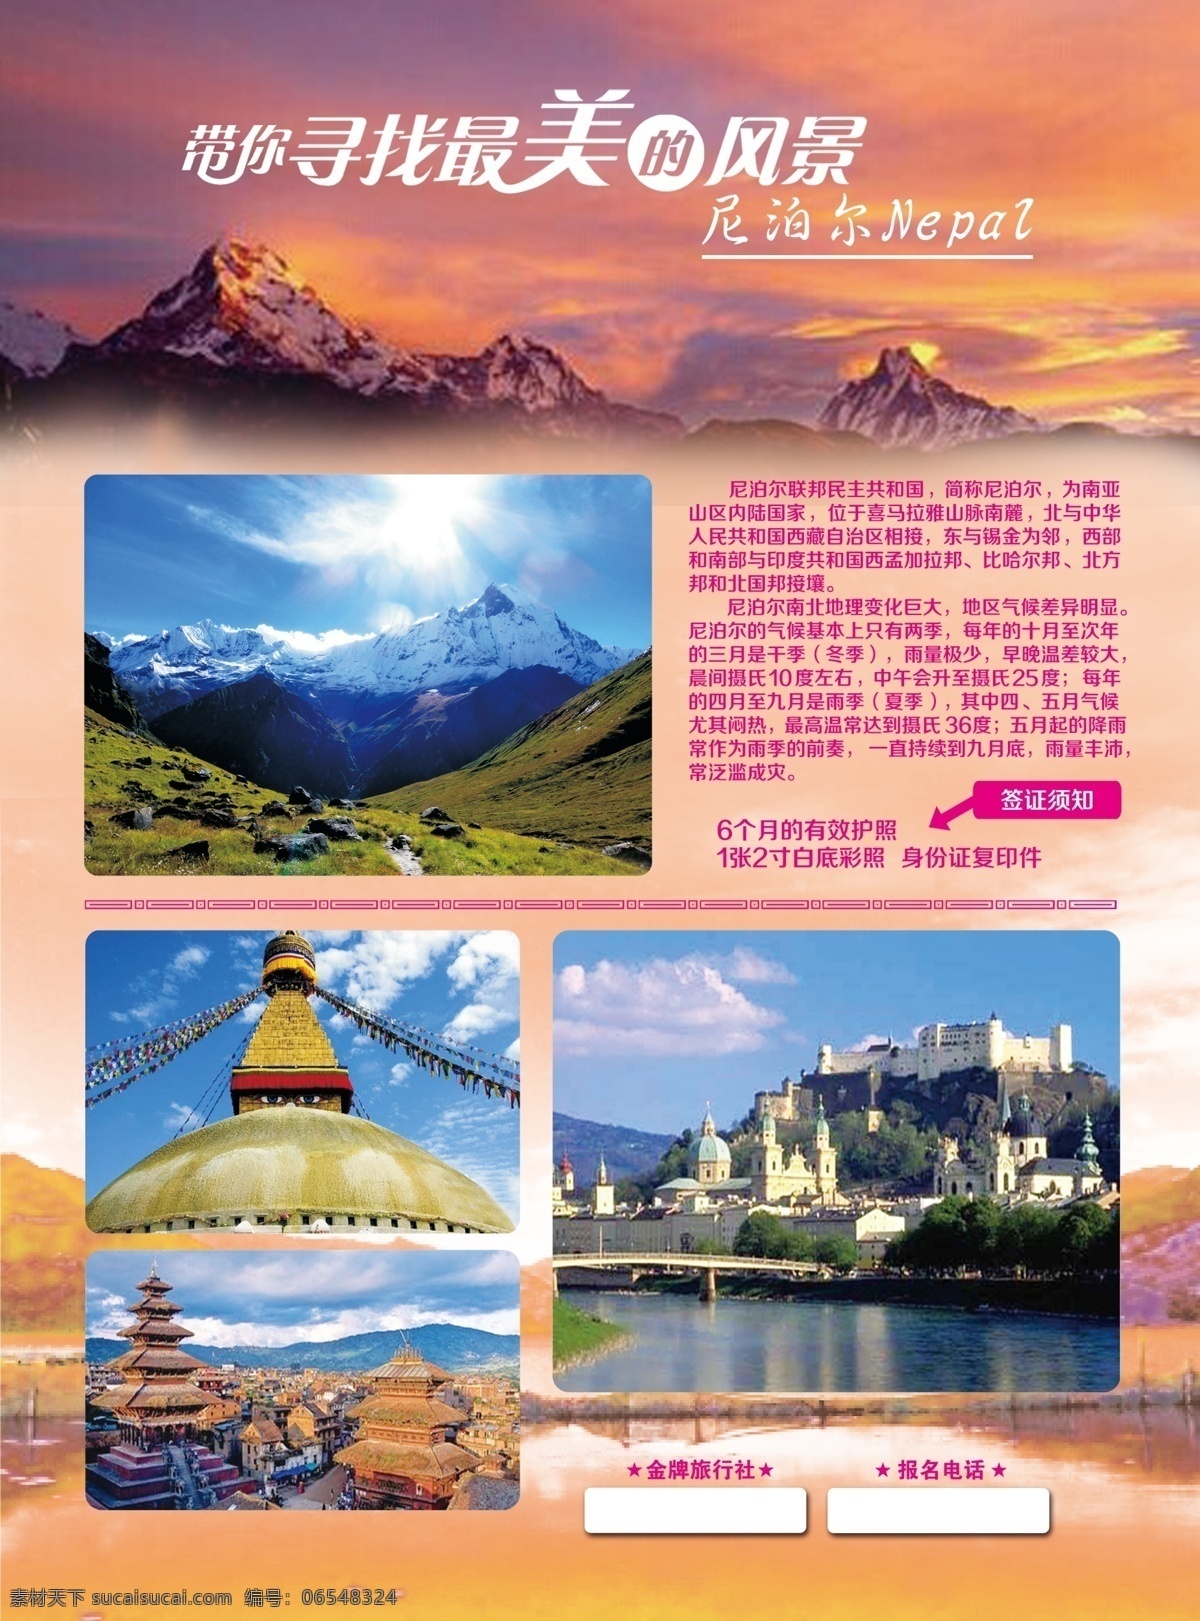 尼泊尔旅游 模版下载 尼泊尔 最美 风景 红色 旅游 寻找 山水 宣传单 psd源文件 300分辨率 粉色